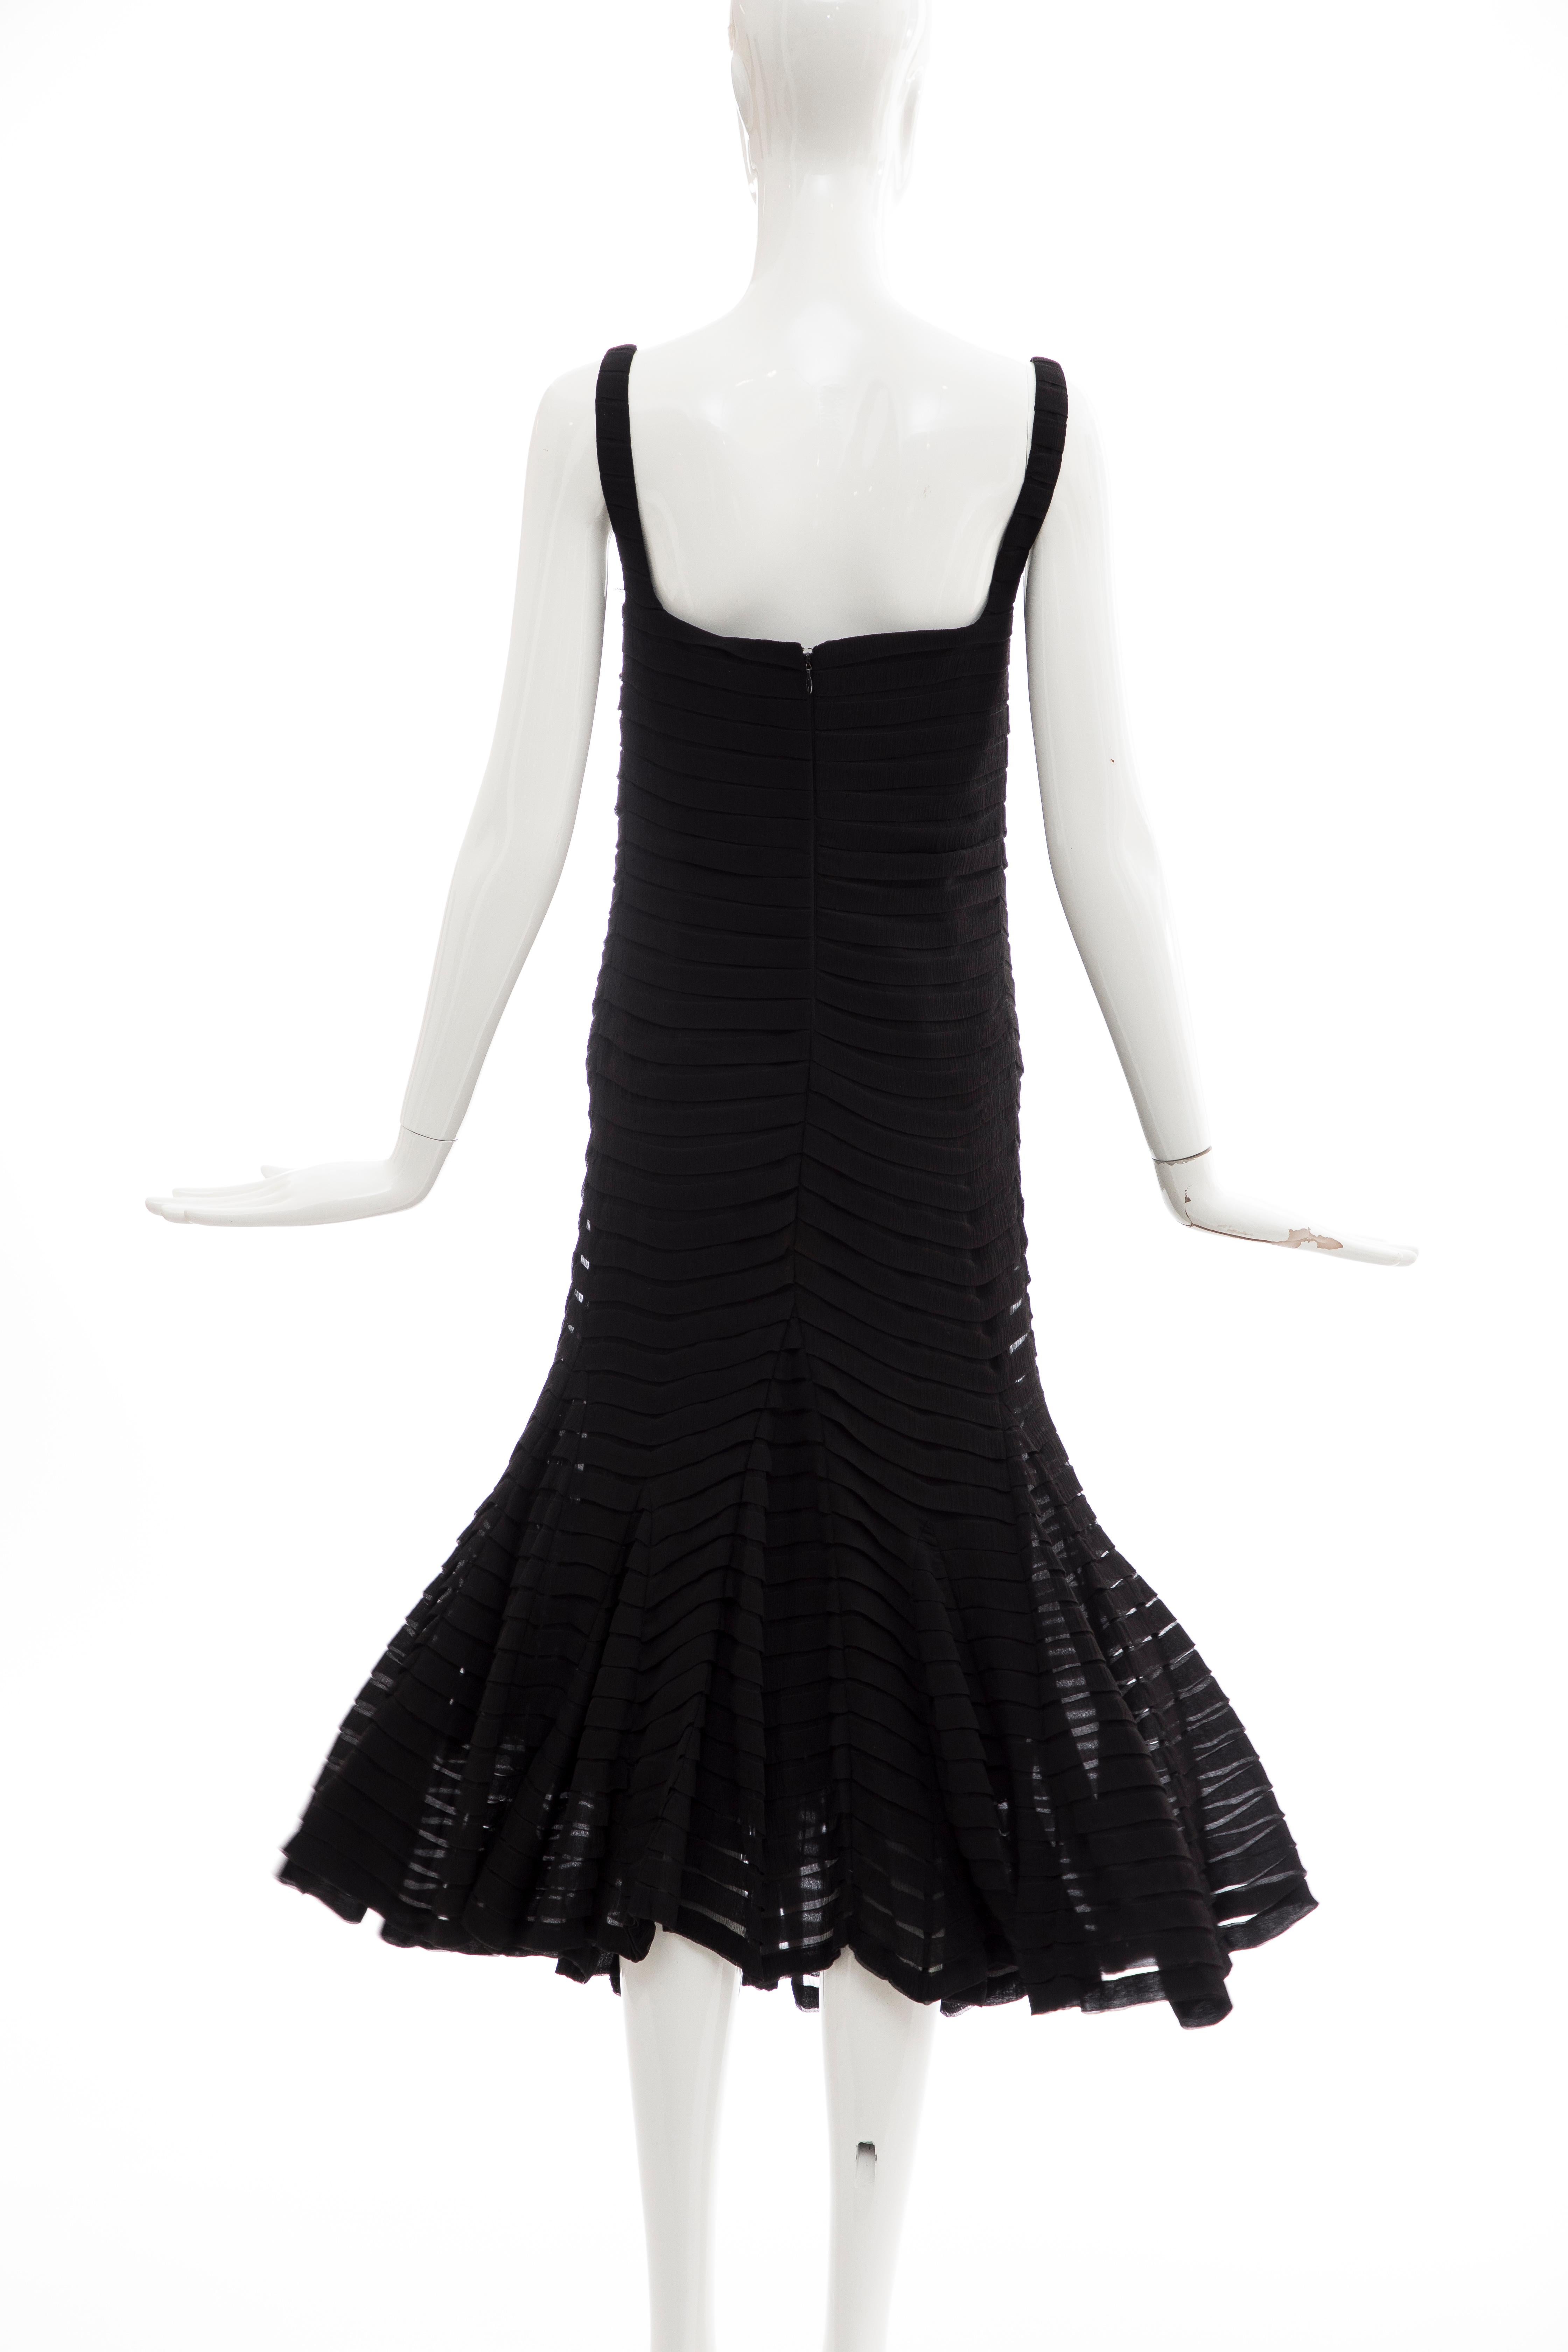 Alexander McQueen Black Silk Chiffon Evening Dress, Fall 2005  For Sale 4